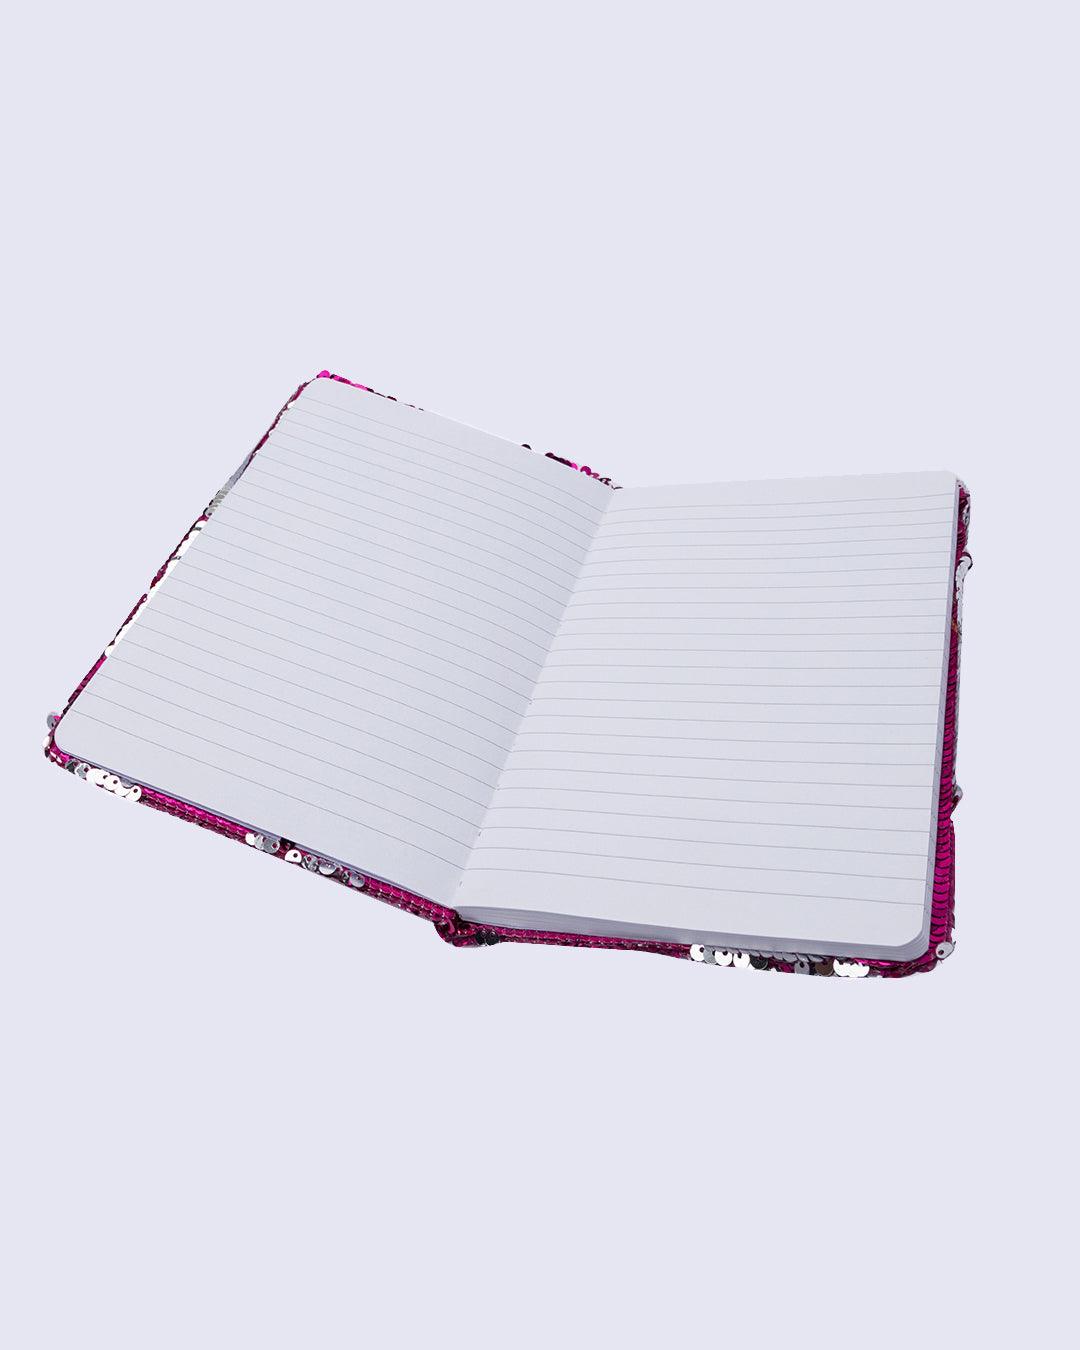 Sequin Notebook, Heart Design, Purple, Paper - MARKET 99